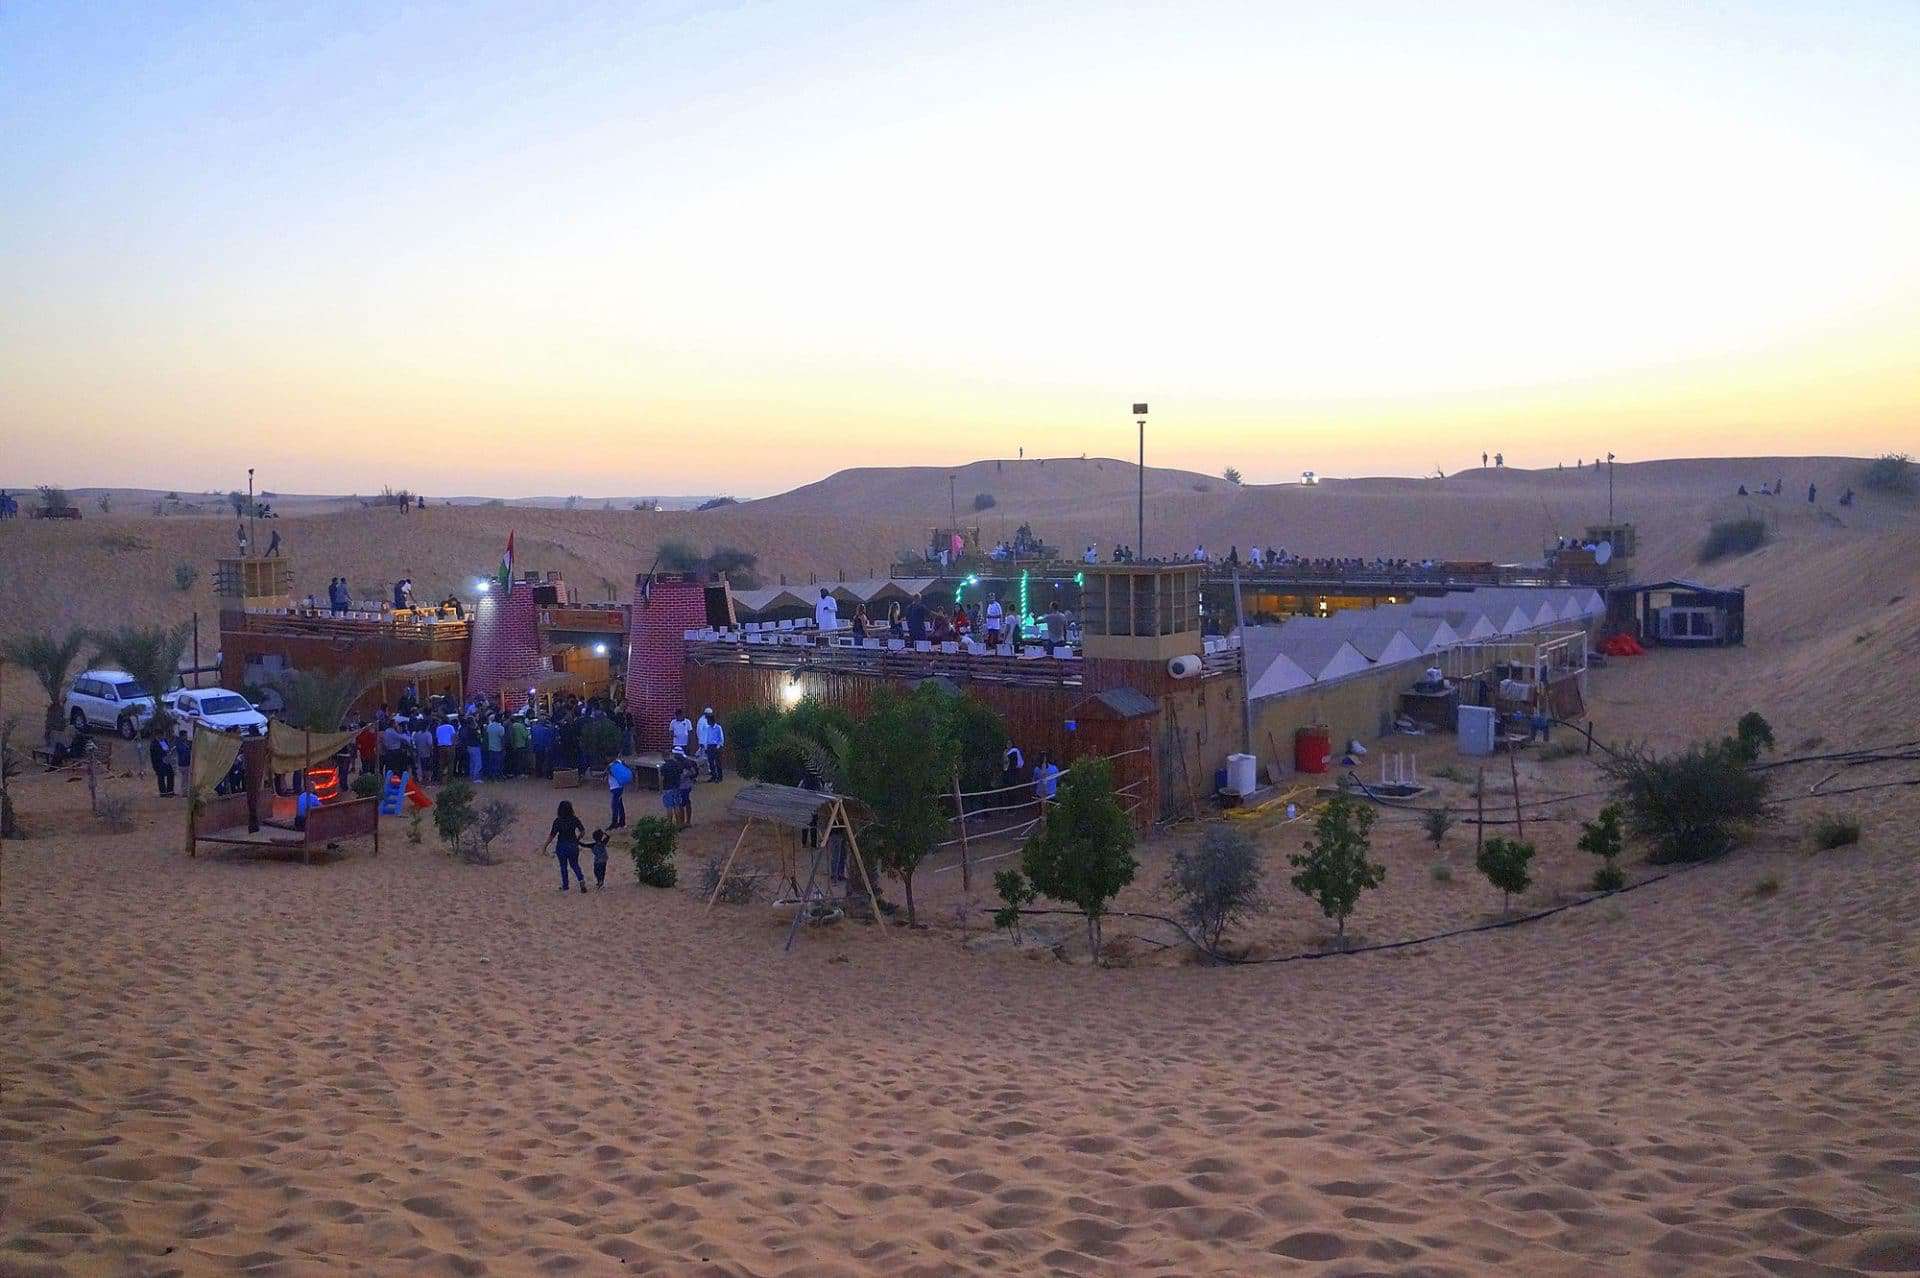 accampamento deserto safari dubai emirati